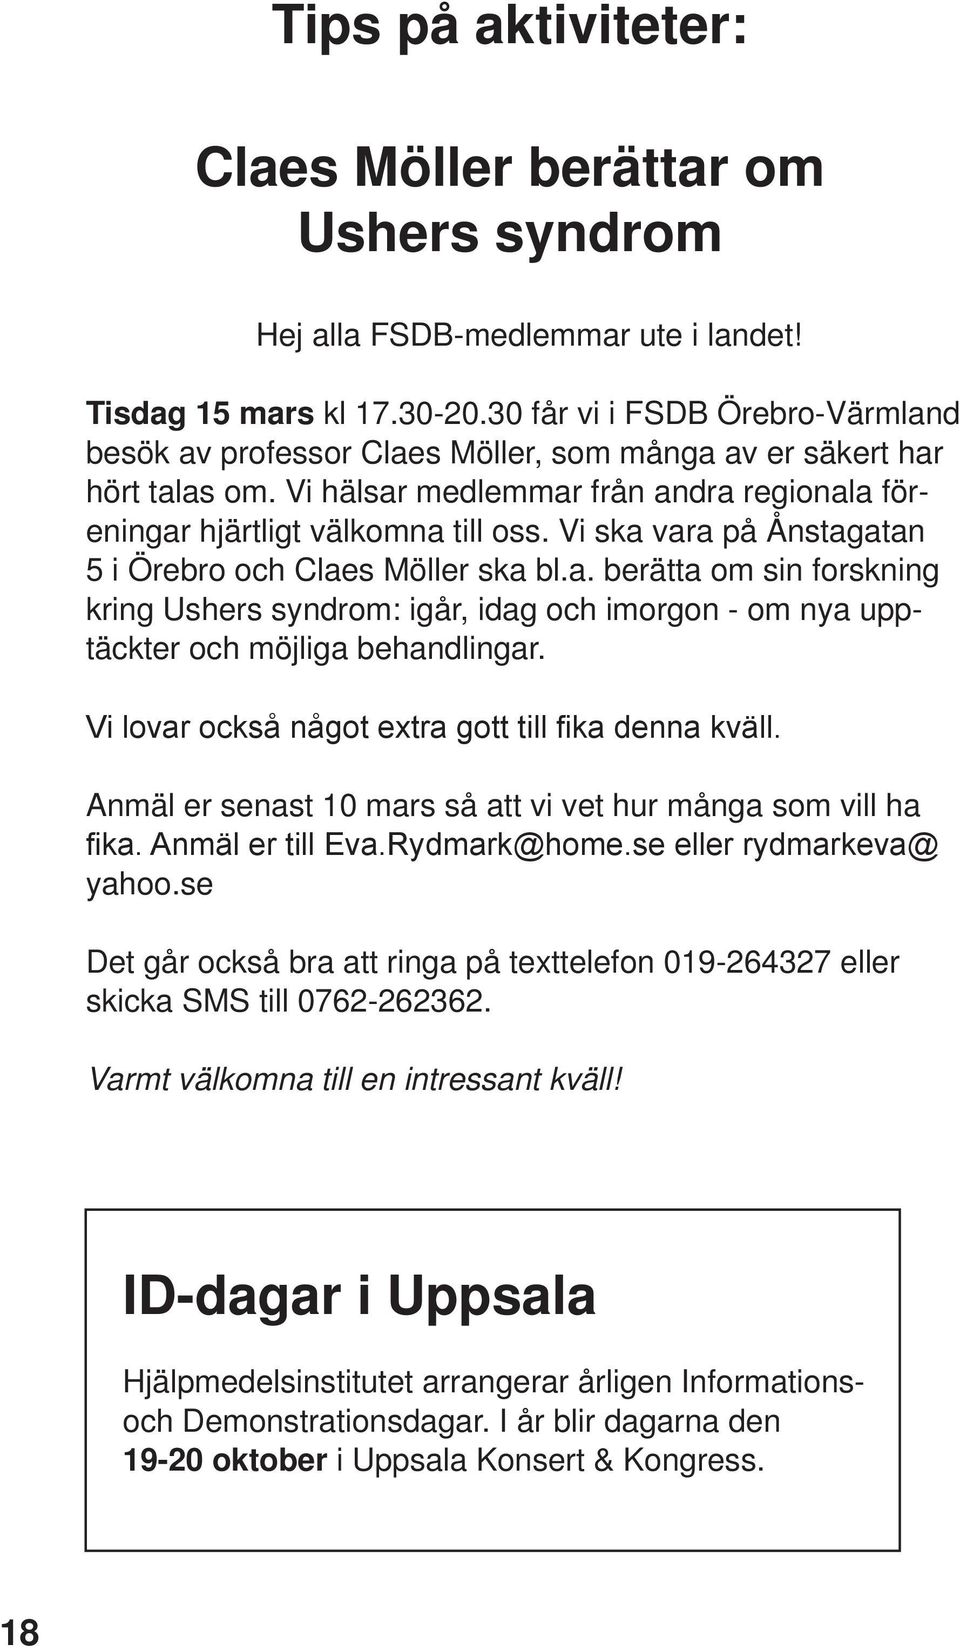 Vi ska vara på Ånstagatan 5 i Örebro och Claes Möller ska bl.a. berätta om sin forskning kring Ushers syndrom: igår, idag och imorgon - om nya upptäckter och möjliga behandlingar.